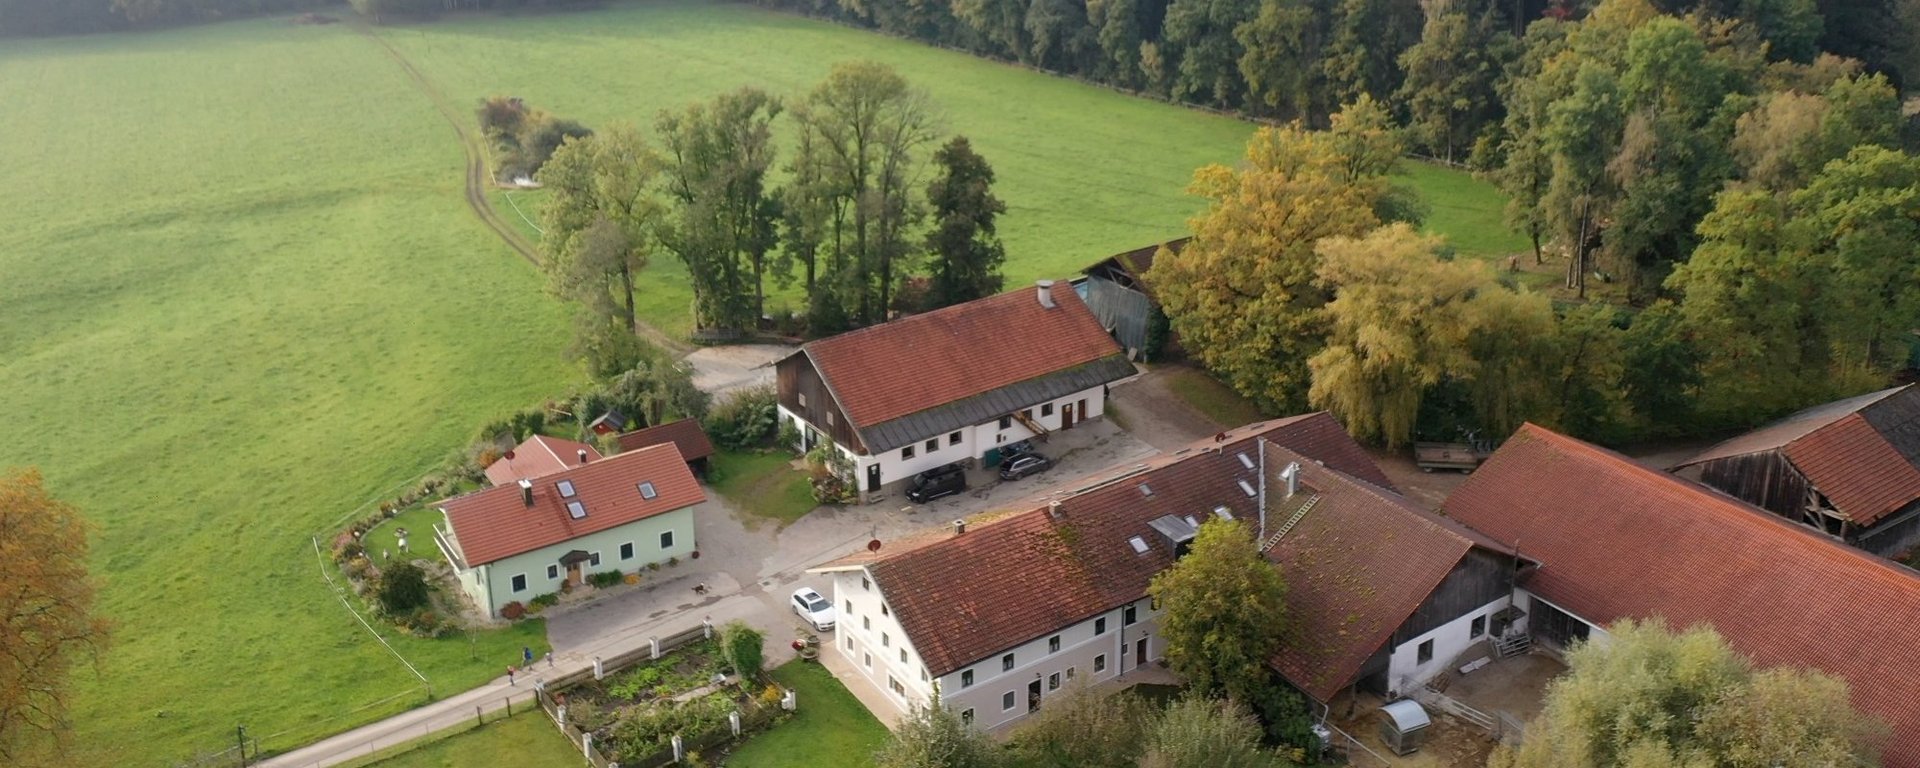 Luftaufnahme des Gästehaus Huber in Forstern im Münchner Umland